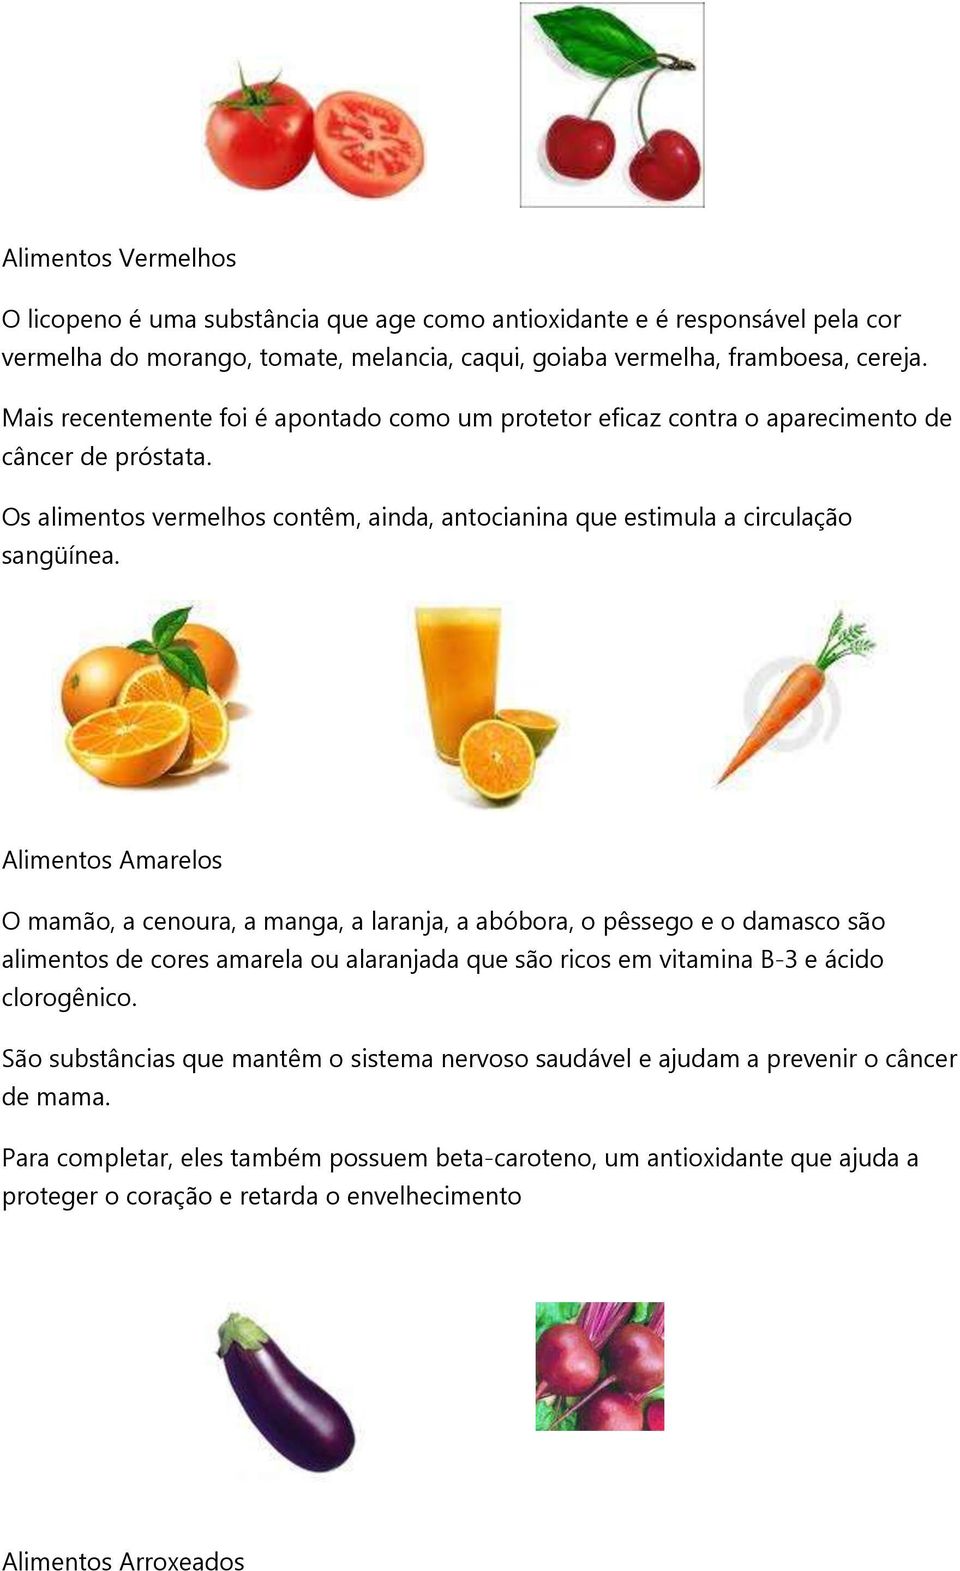 Alimentos Amarelos O mamão, a cenoura, a manga, a laranja, a abóbora, o pêssego e o damasco são alimentos de cores amarela ou alaranjada que são ricos em vitamina B-3 e ácido clorogênico.